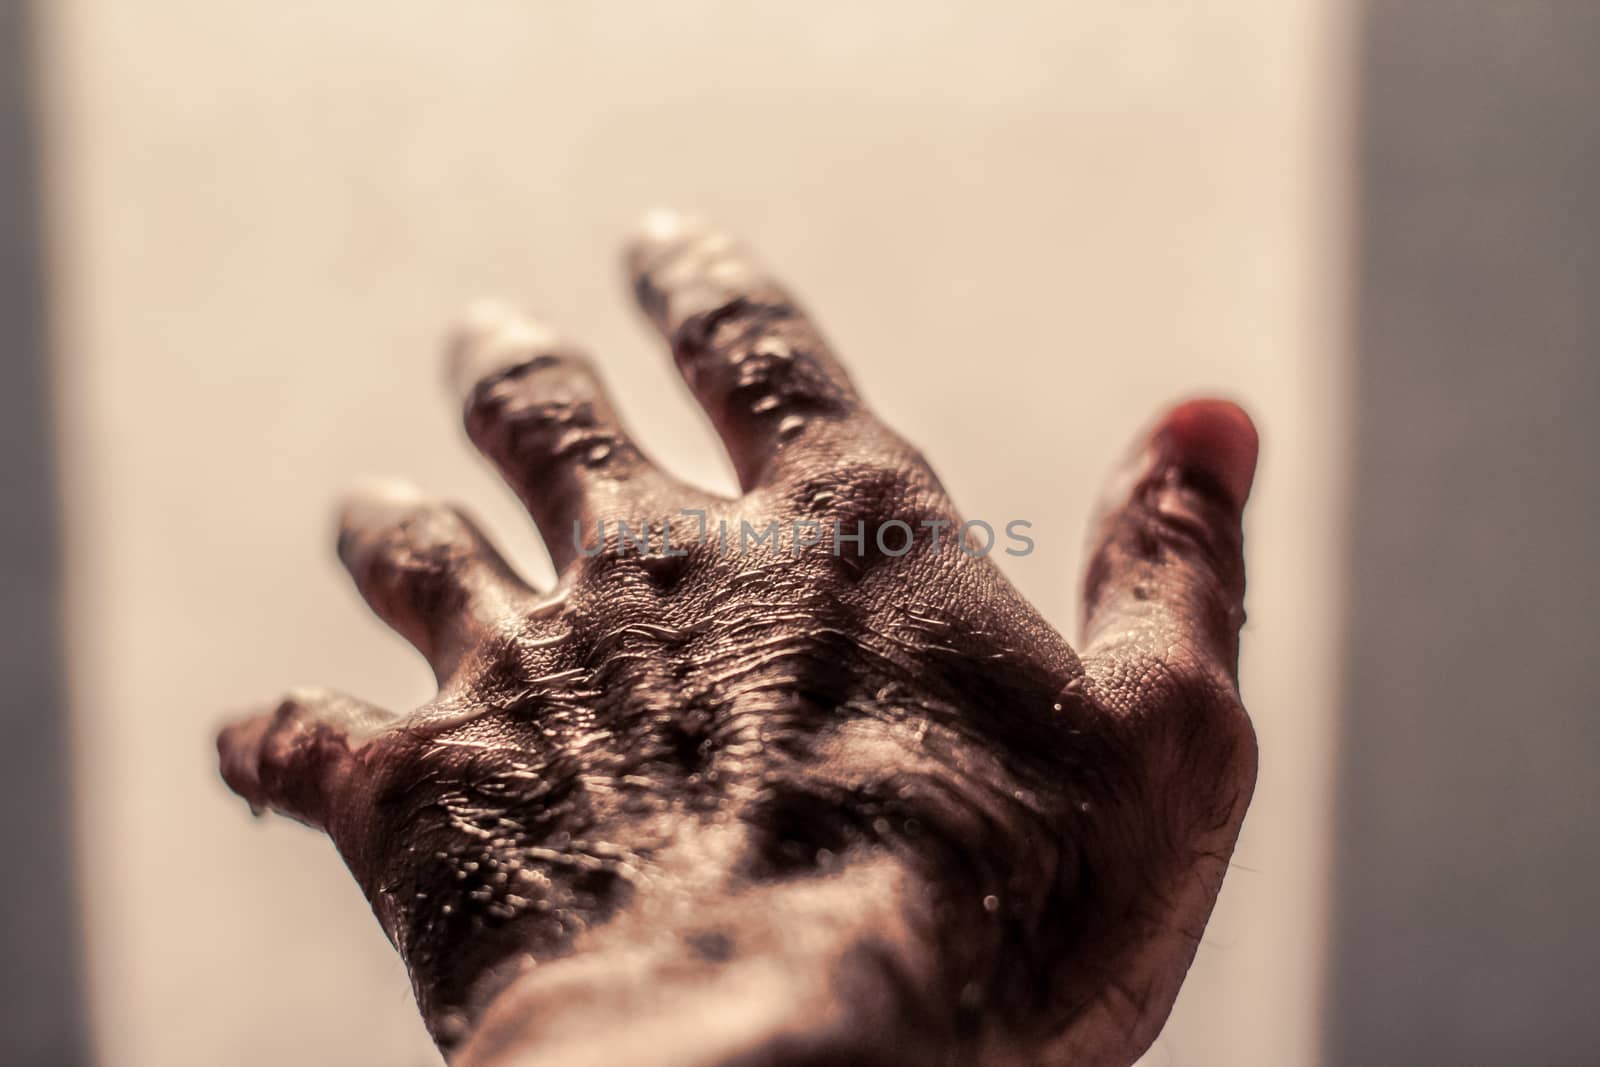 Photograph of an open wet human hand